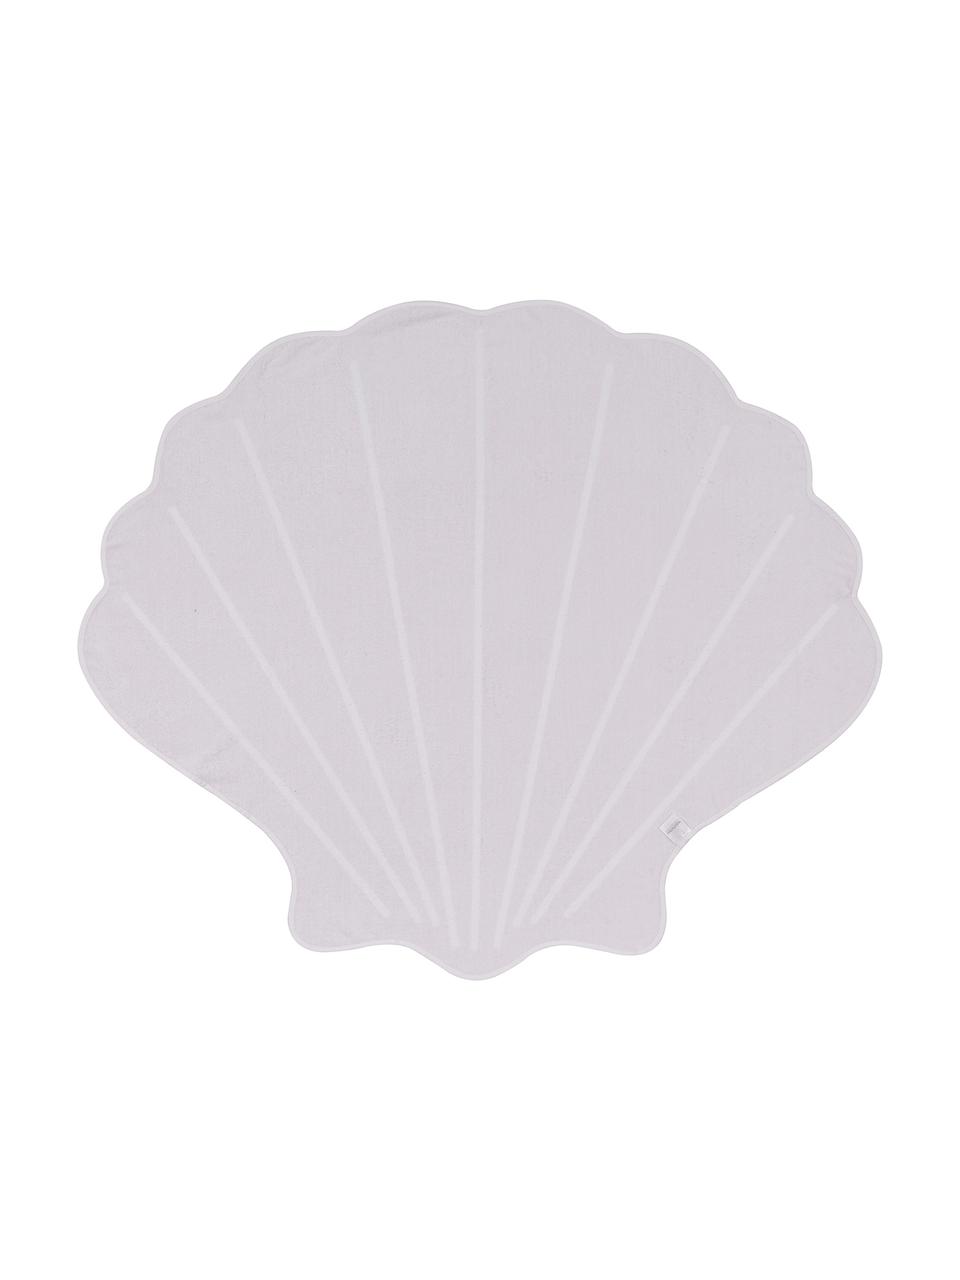 Ręcznik plażowy Shelly, 55% poliester, 45% bawełna
Bardzo niska gramatura 340 g/m², Blady różowy, biały, S 150 x D 130 cm